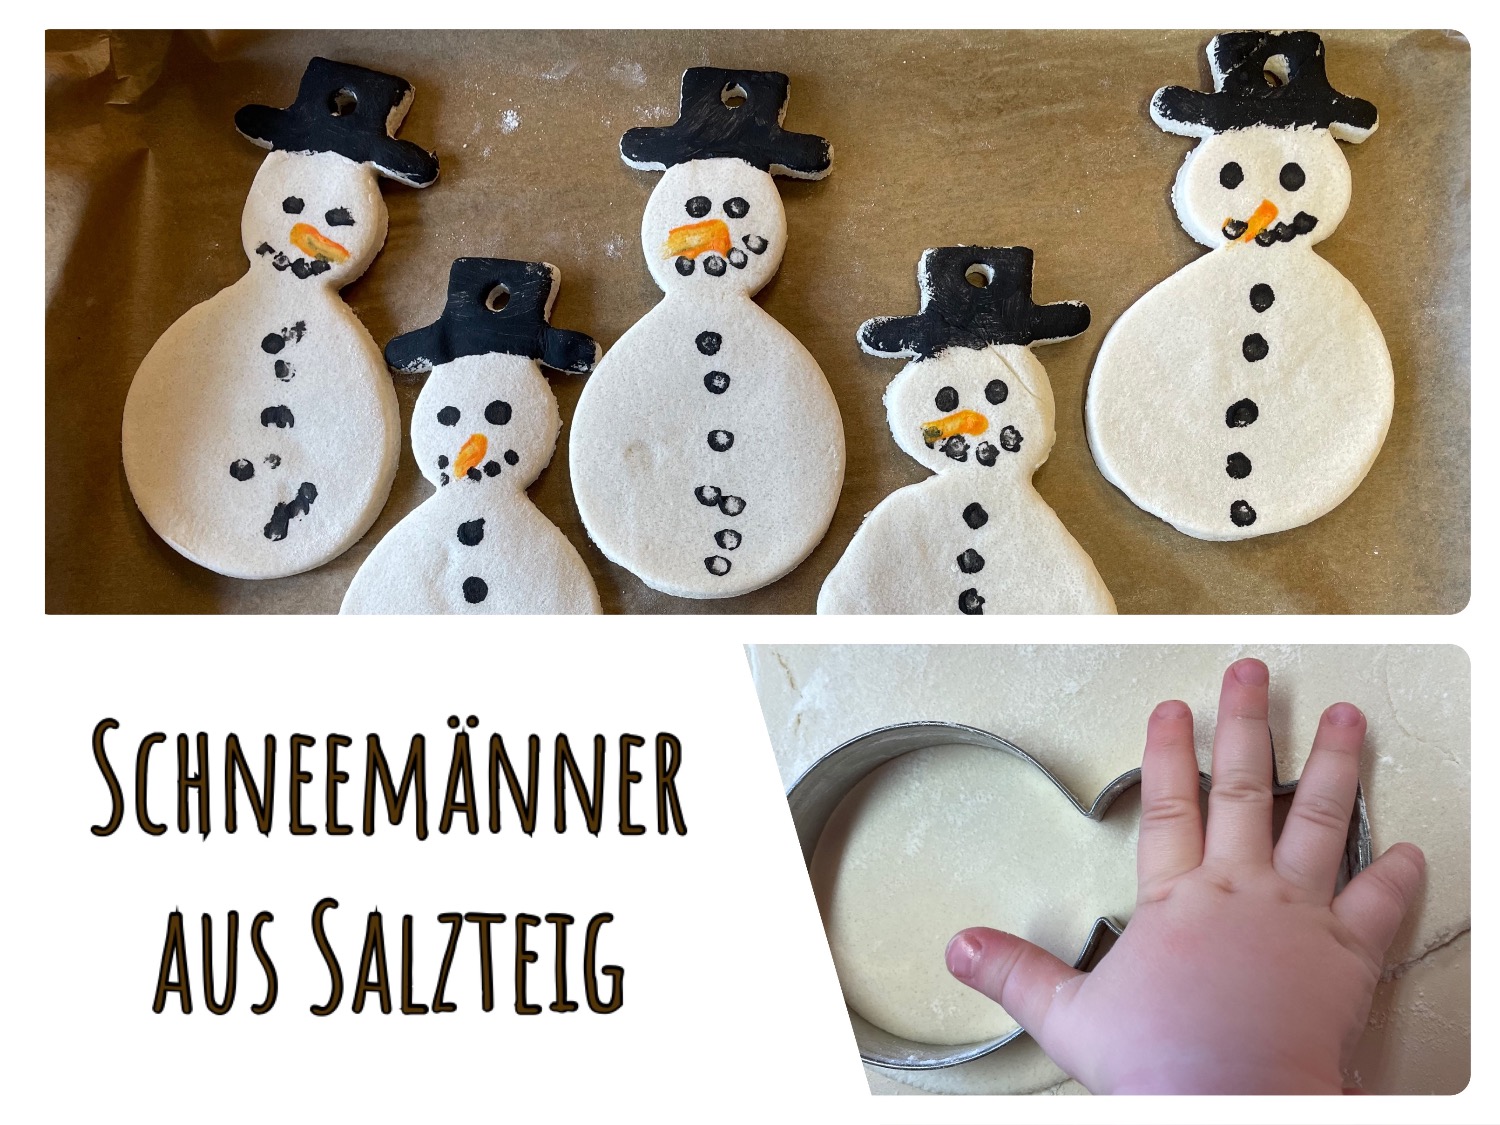 Titelbild zur Bastel- und DIY-Idee für Kinder '(601) Schneemänner aus Salzteig'